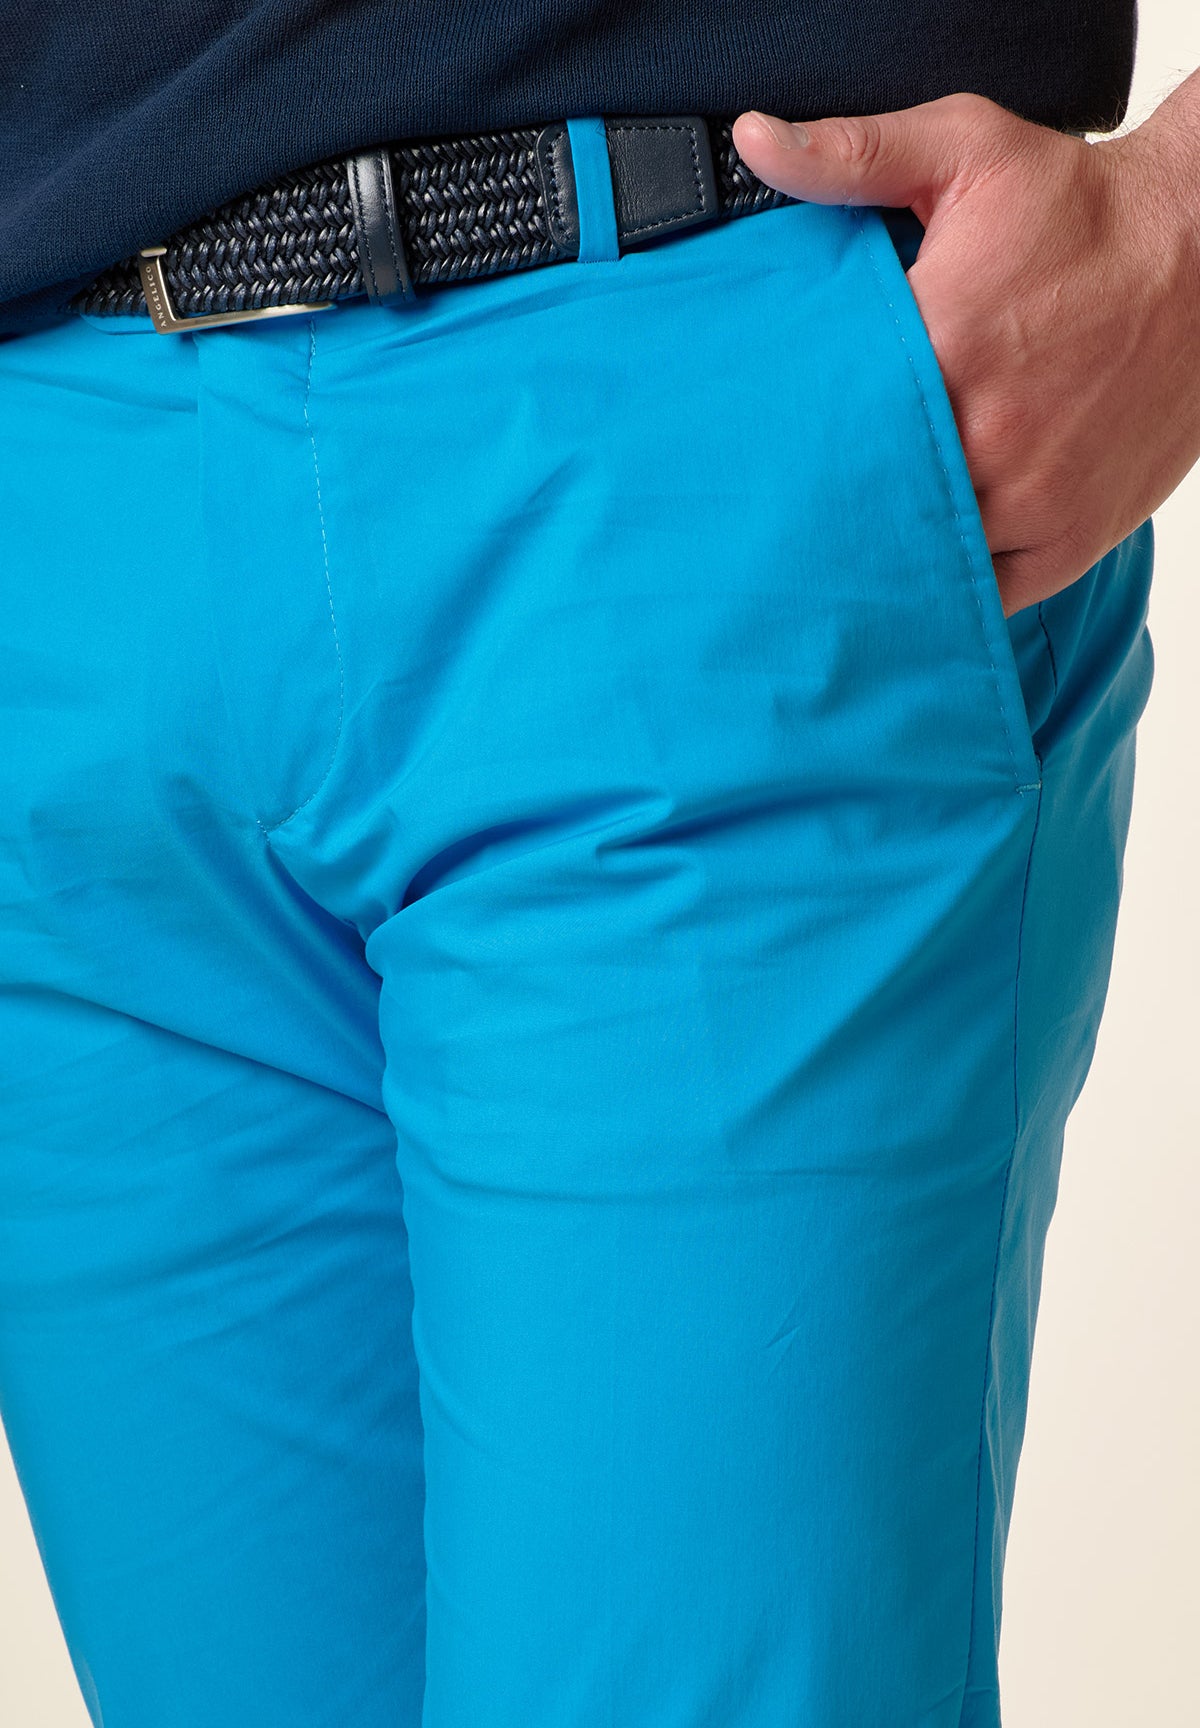 Pantalone turchese cotone tecnico risvolto slim fit